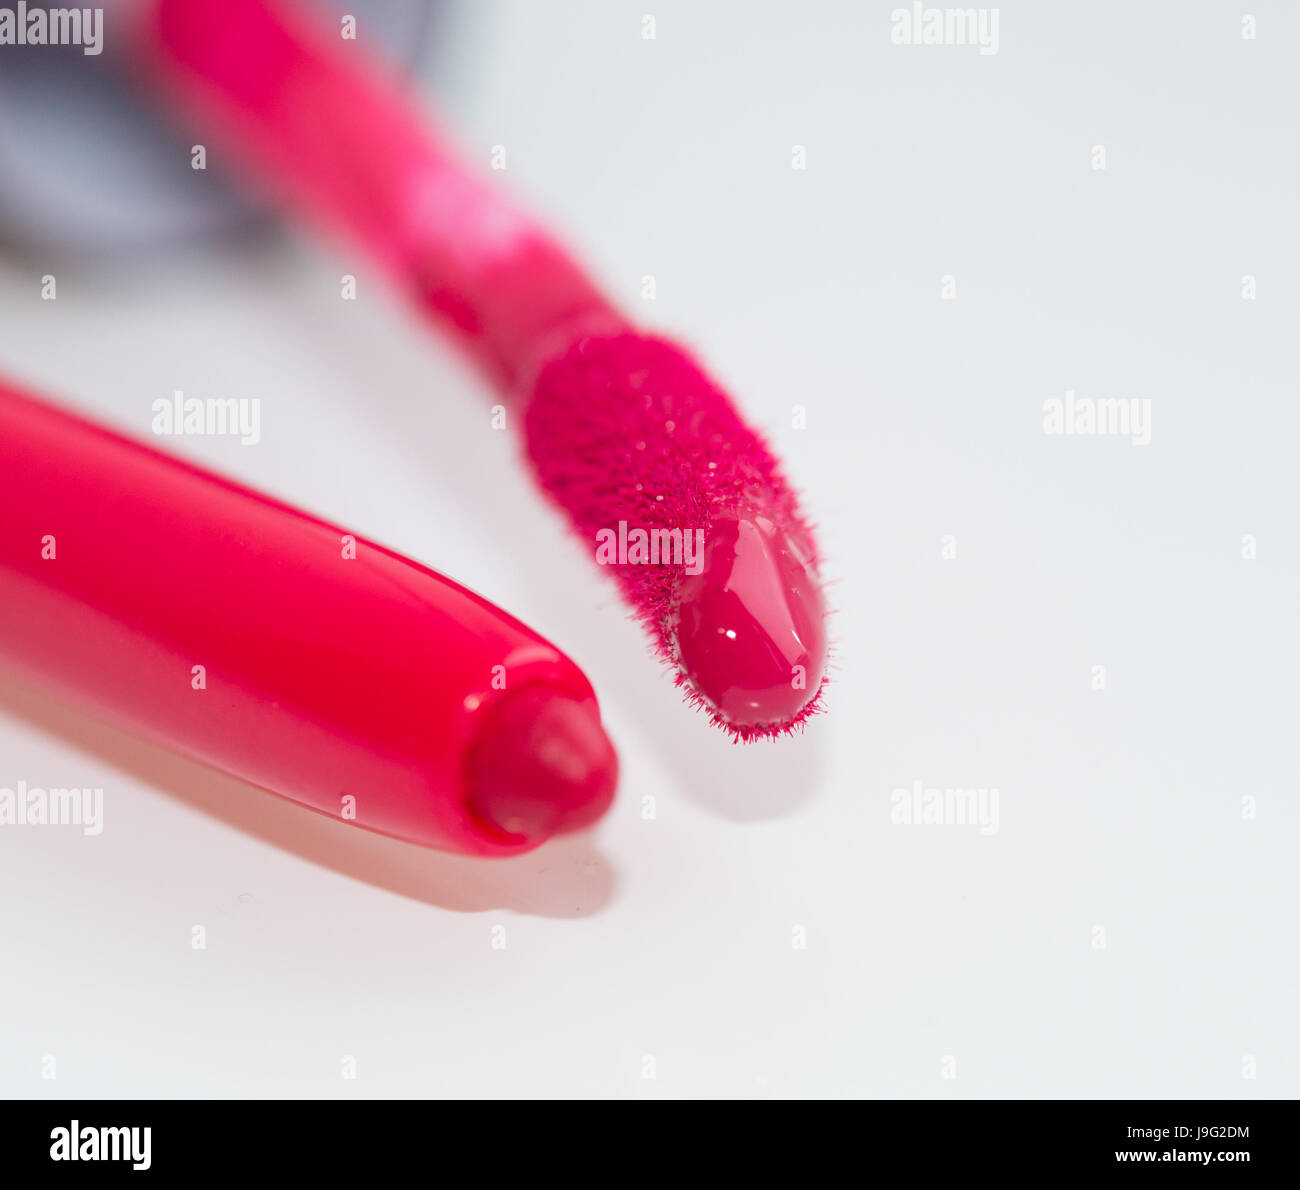 Hot pink lip gloss and lip liner close-up Stock Photo